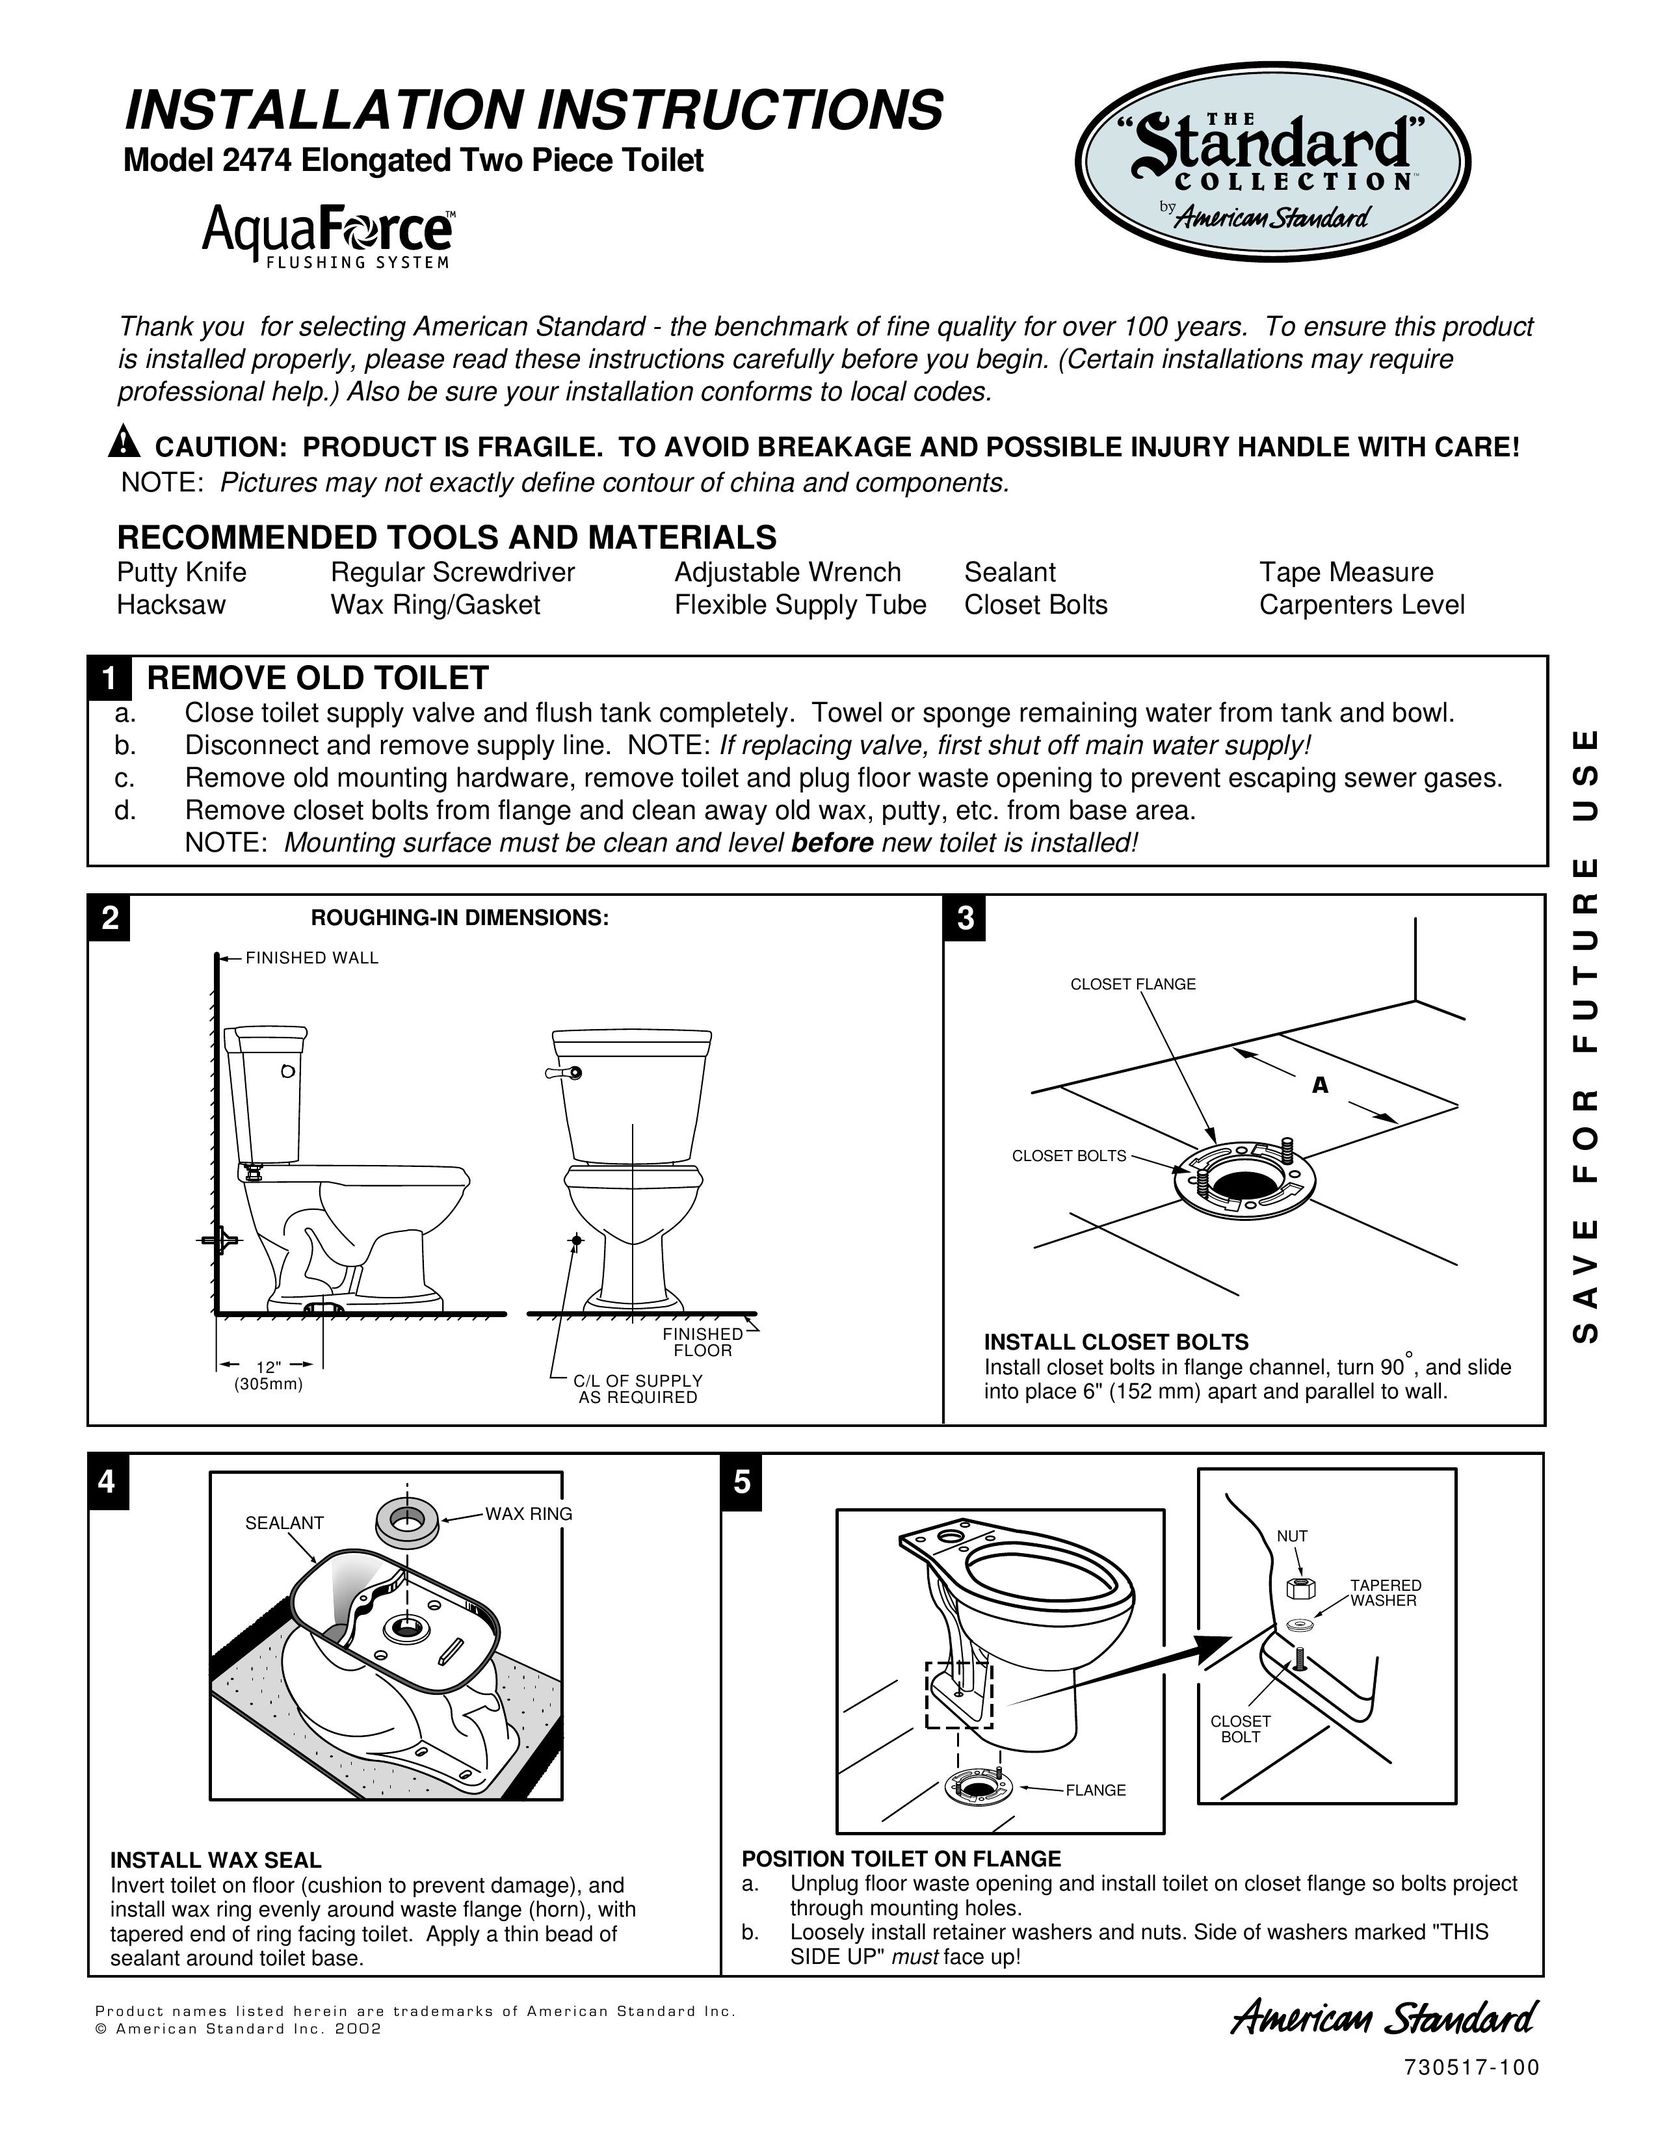 American Standard 2474 Plumbing Product User Manual